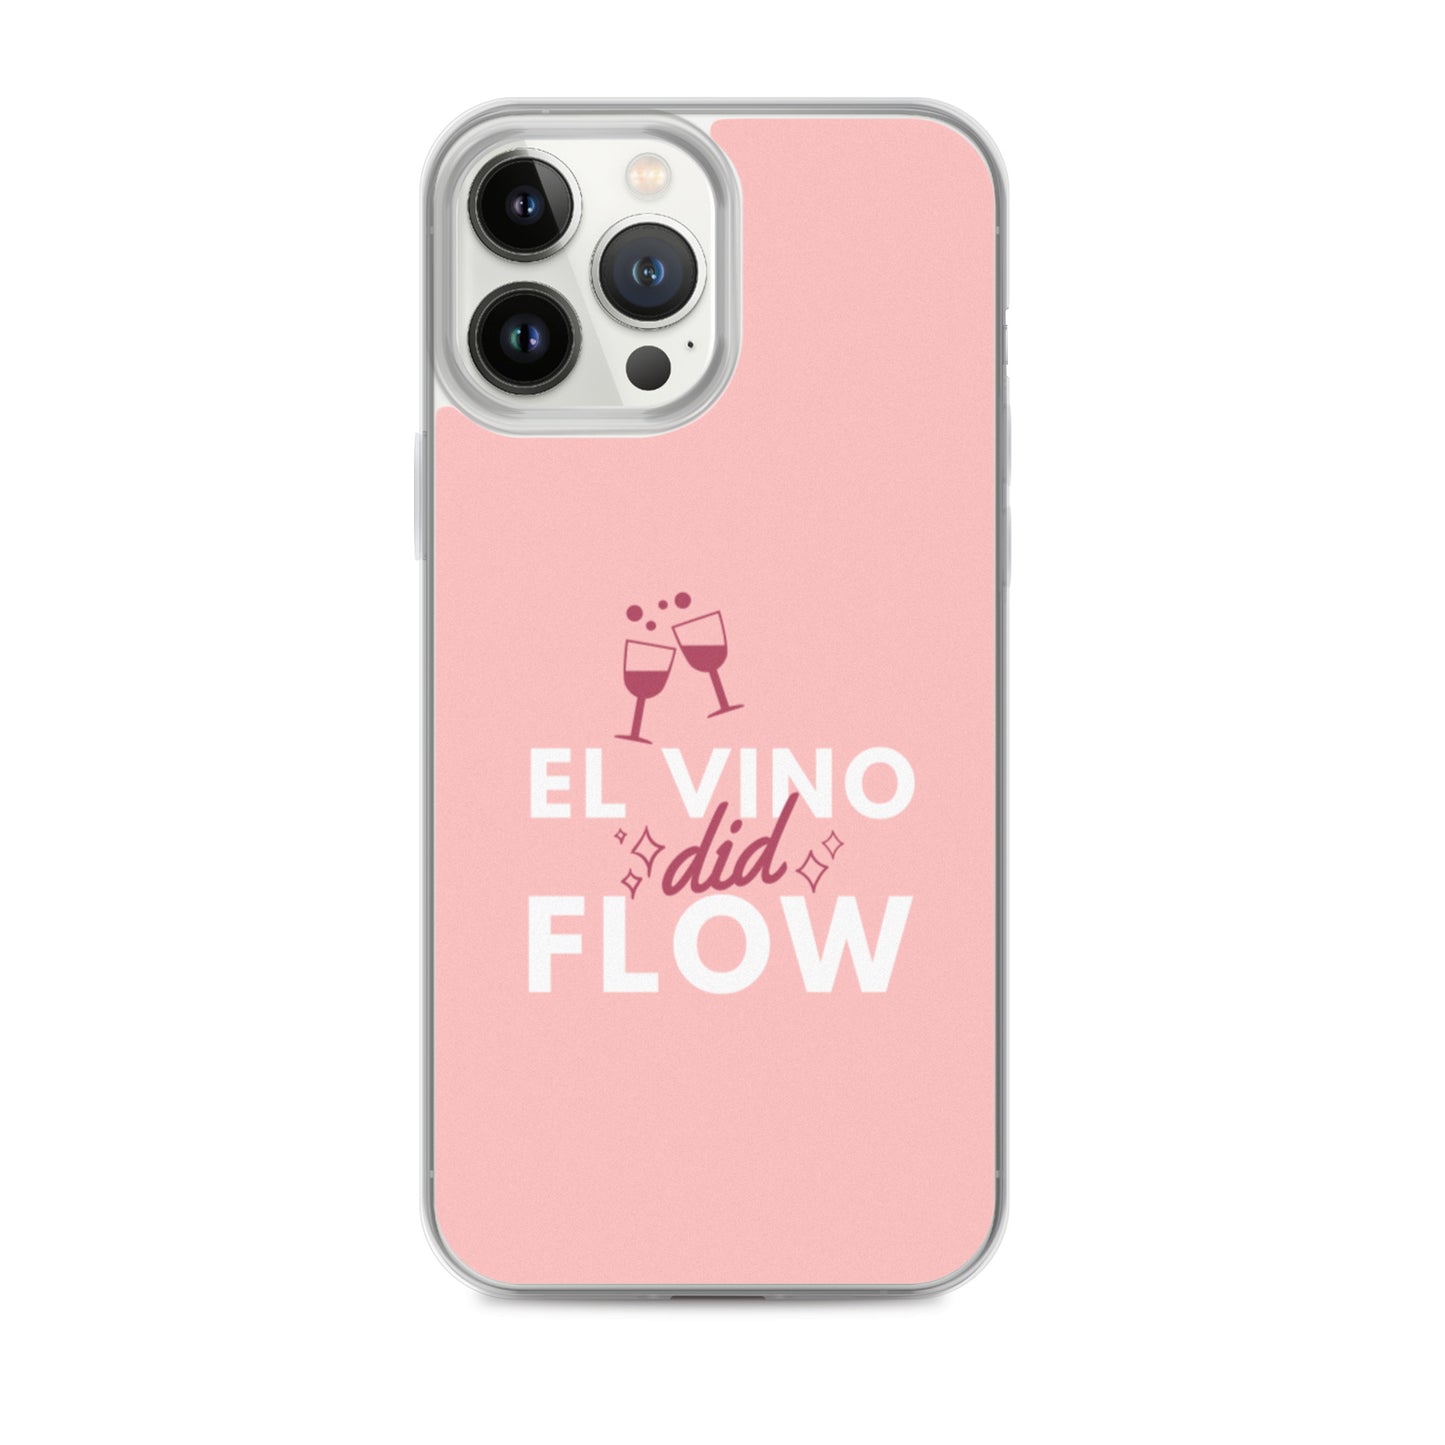 El Vino Did Flow Comedy Quote iPhone Case